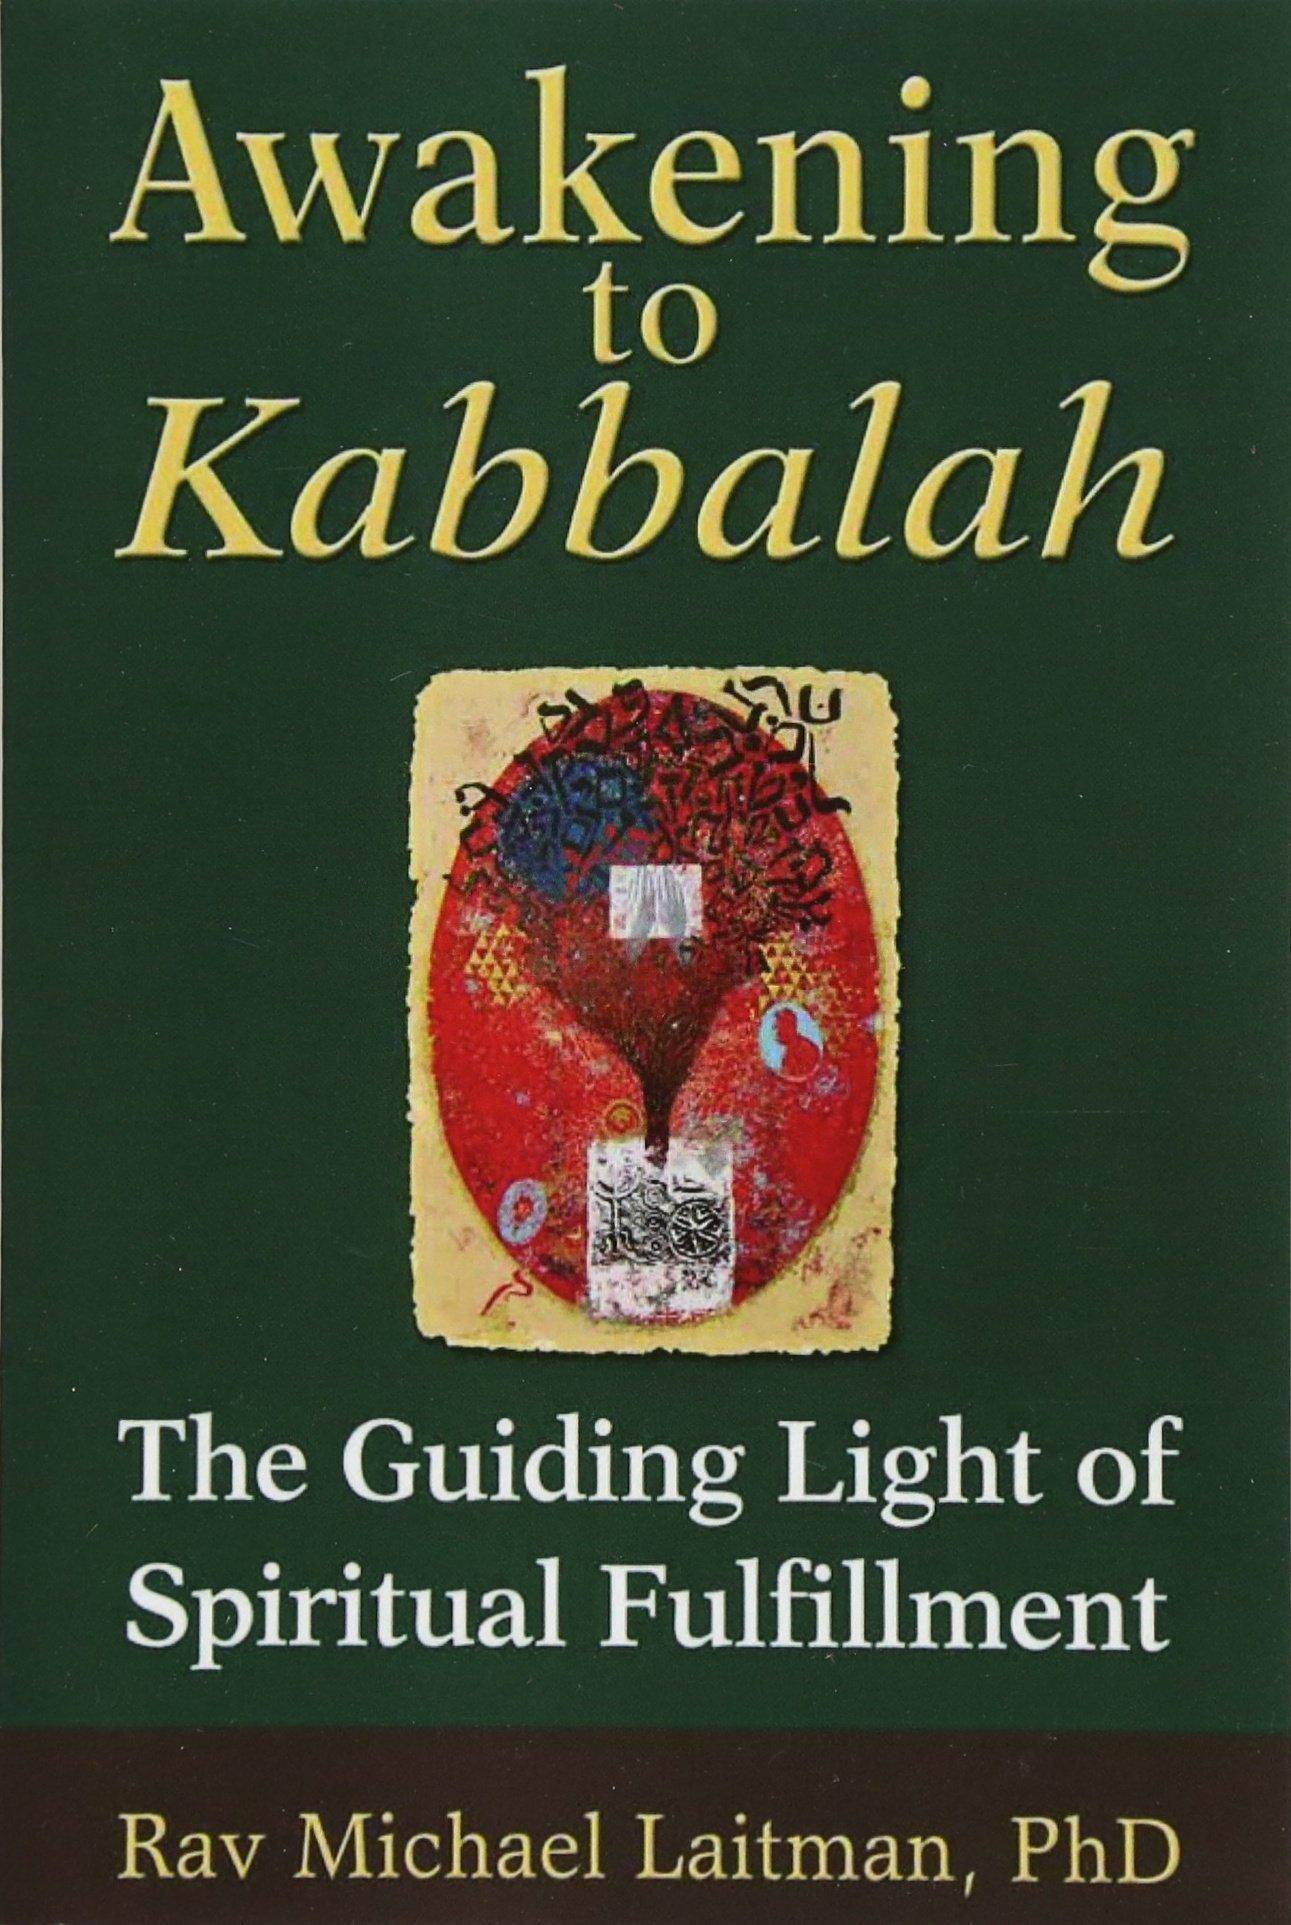 Awakening to Kabbalah: The Guiding Light of Spiritual Fulfillmen - SureShot Books Publishing LLC